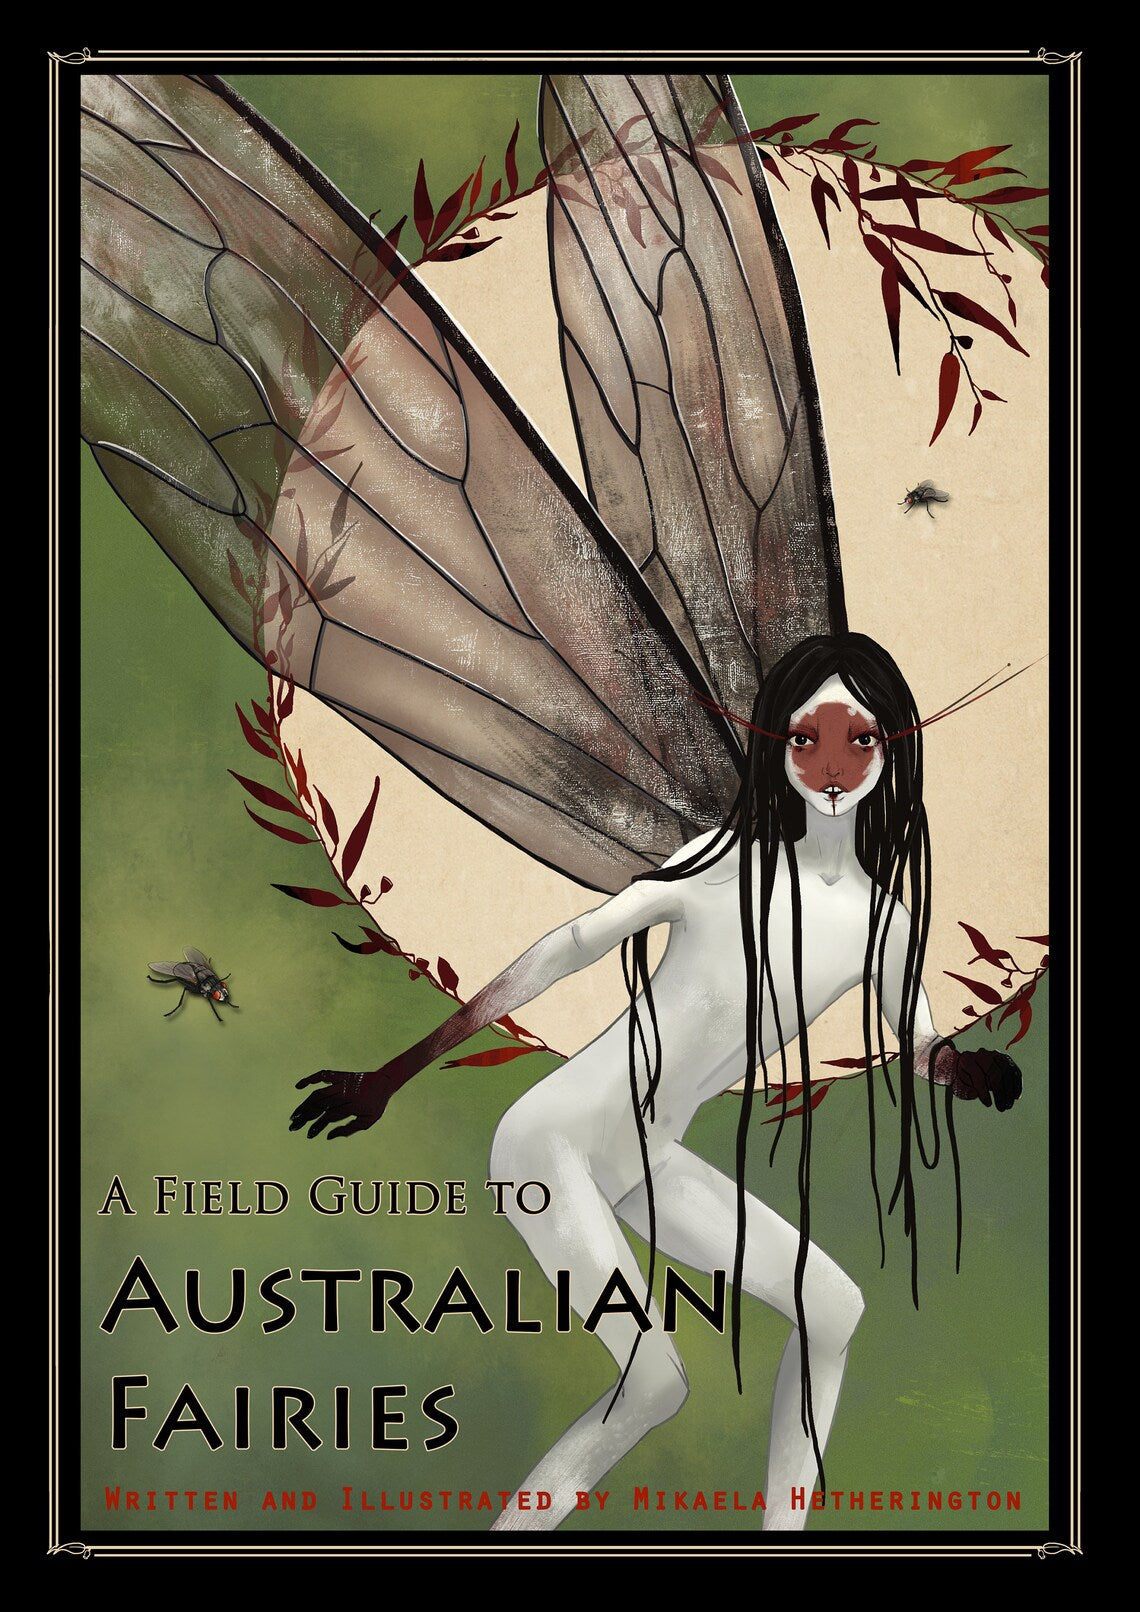 A Field Guide to Australian Fairies